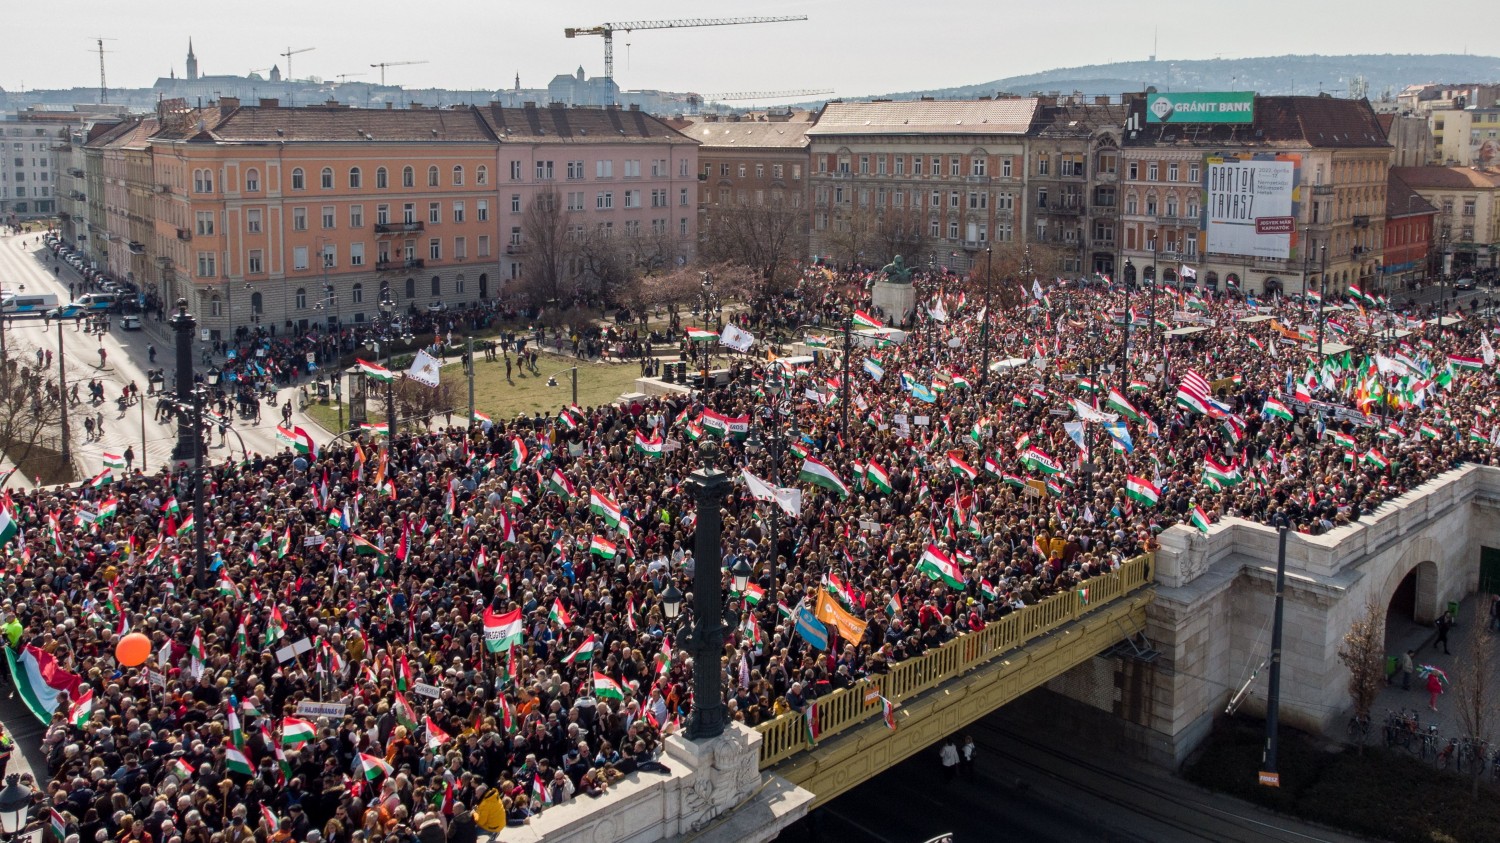 Elindult a Békemenet, a Kossuth téren Orbán Viktor mond beszédet